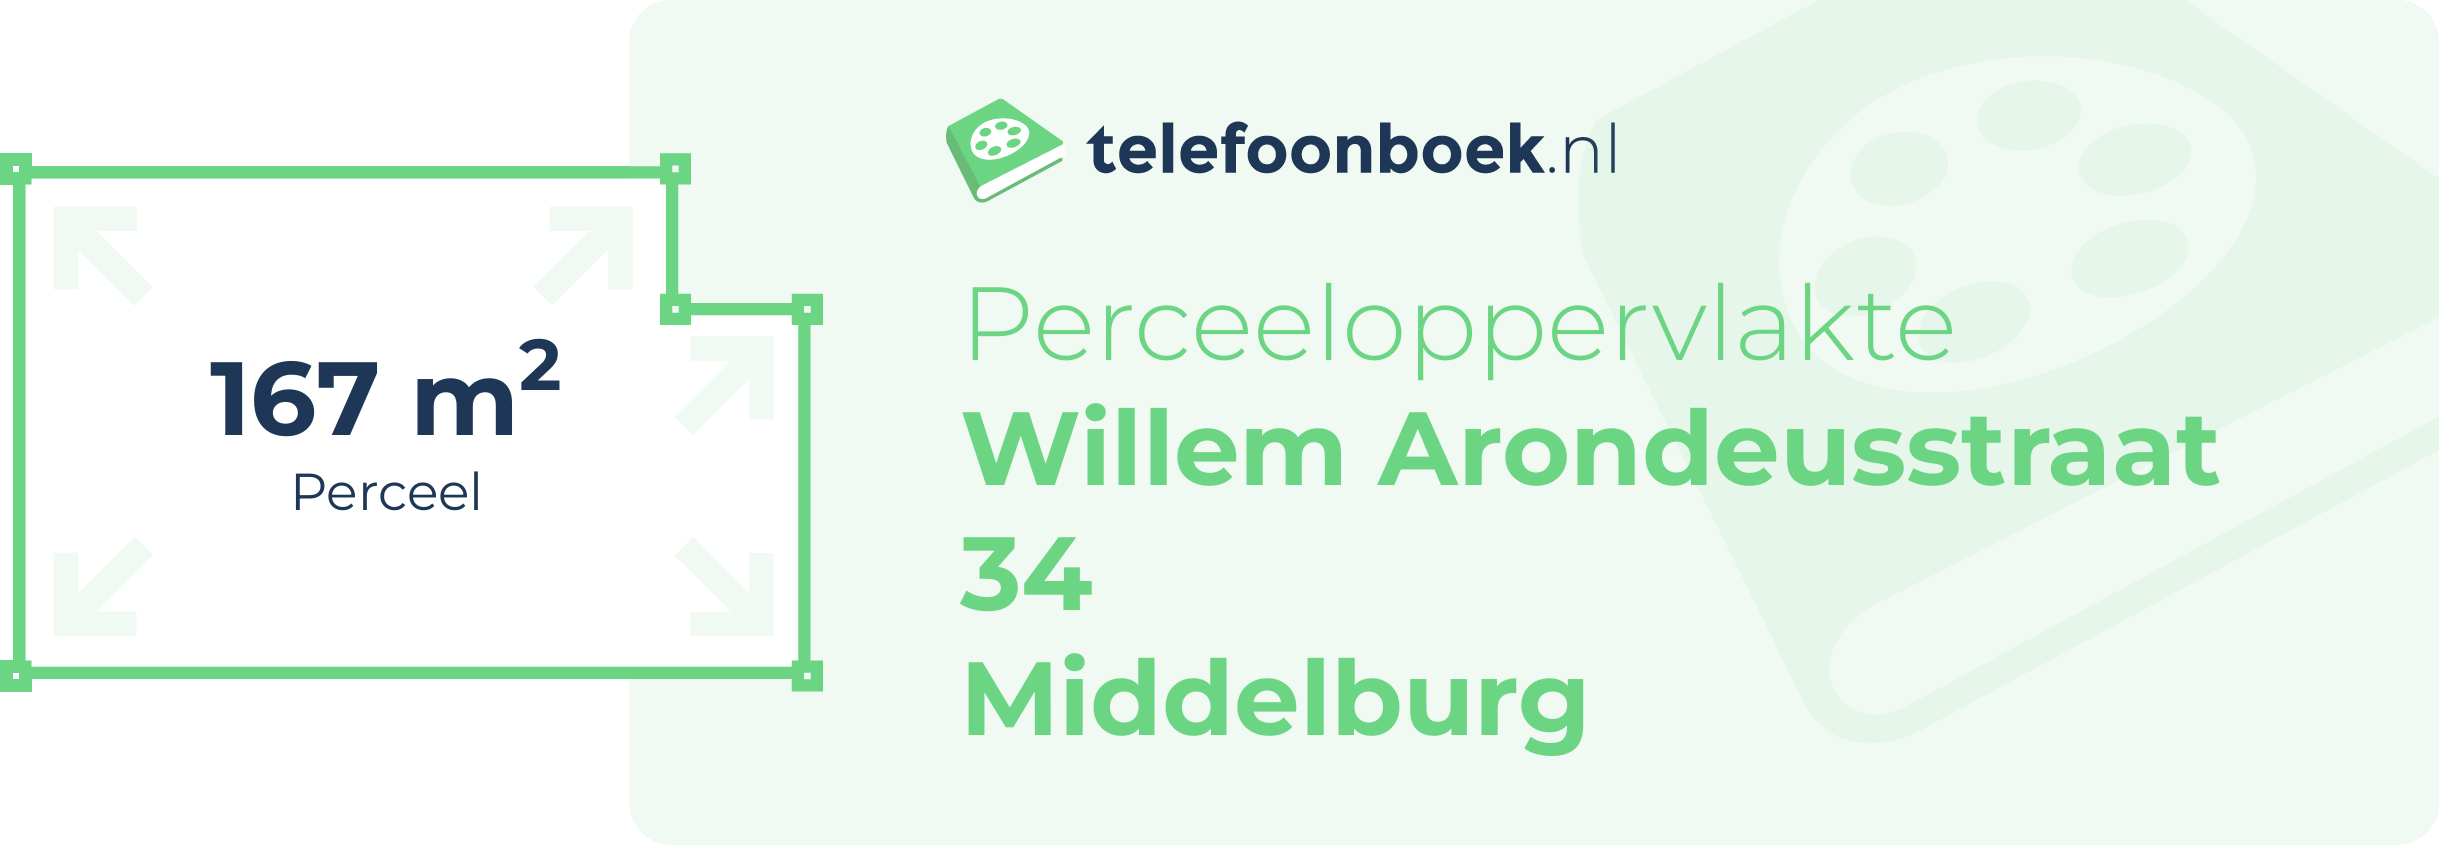 Perceeloppervlakte Willem Arondeusstraat 34 Middelburg